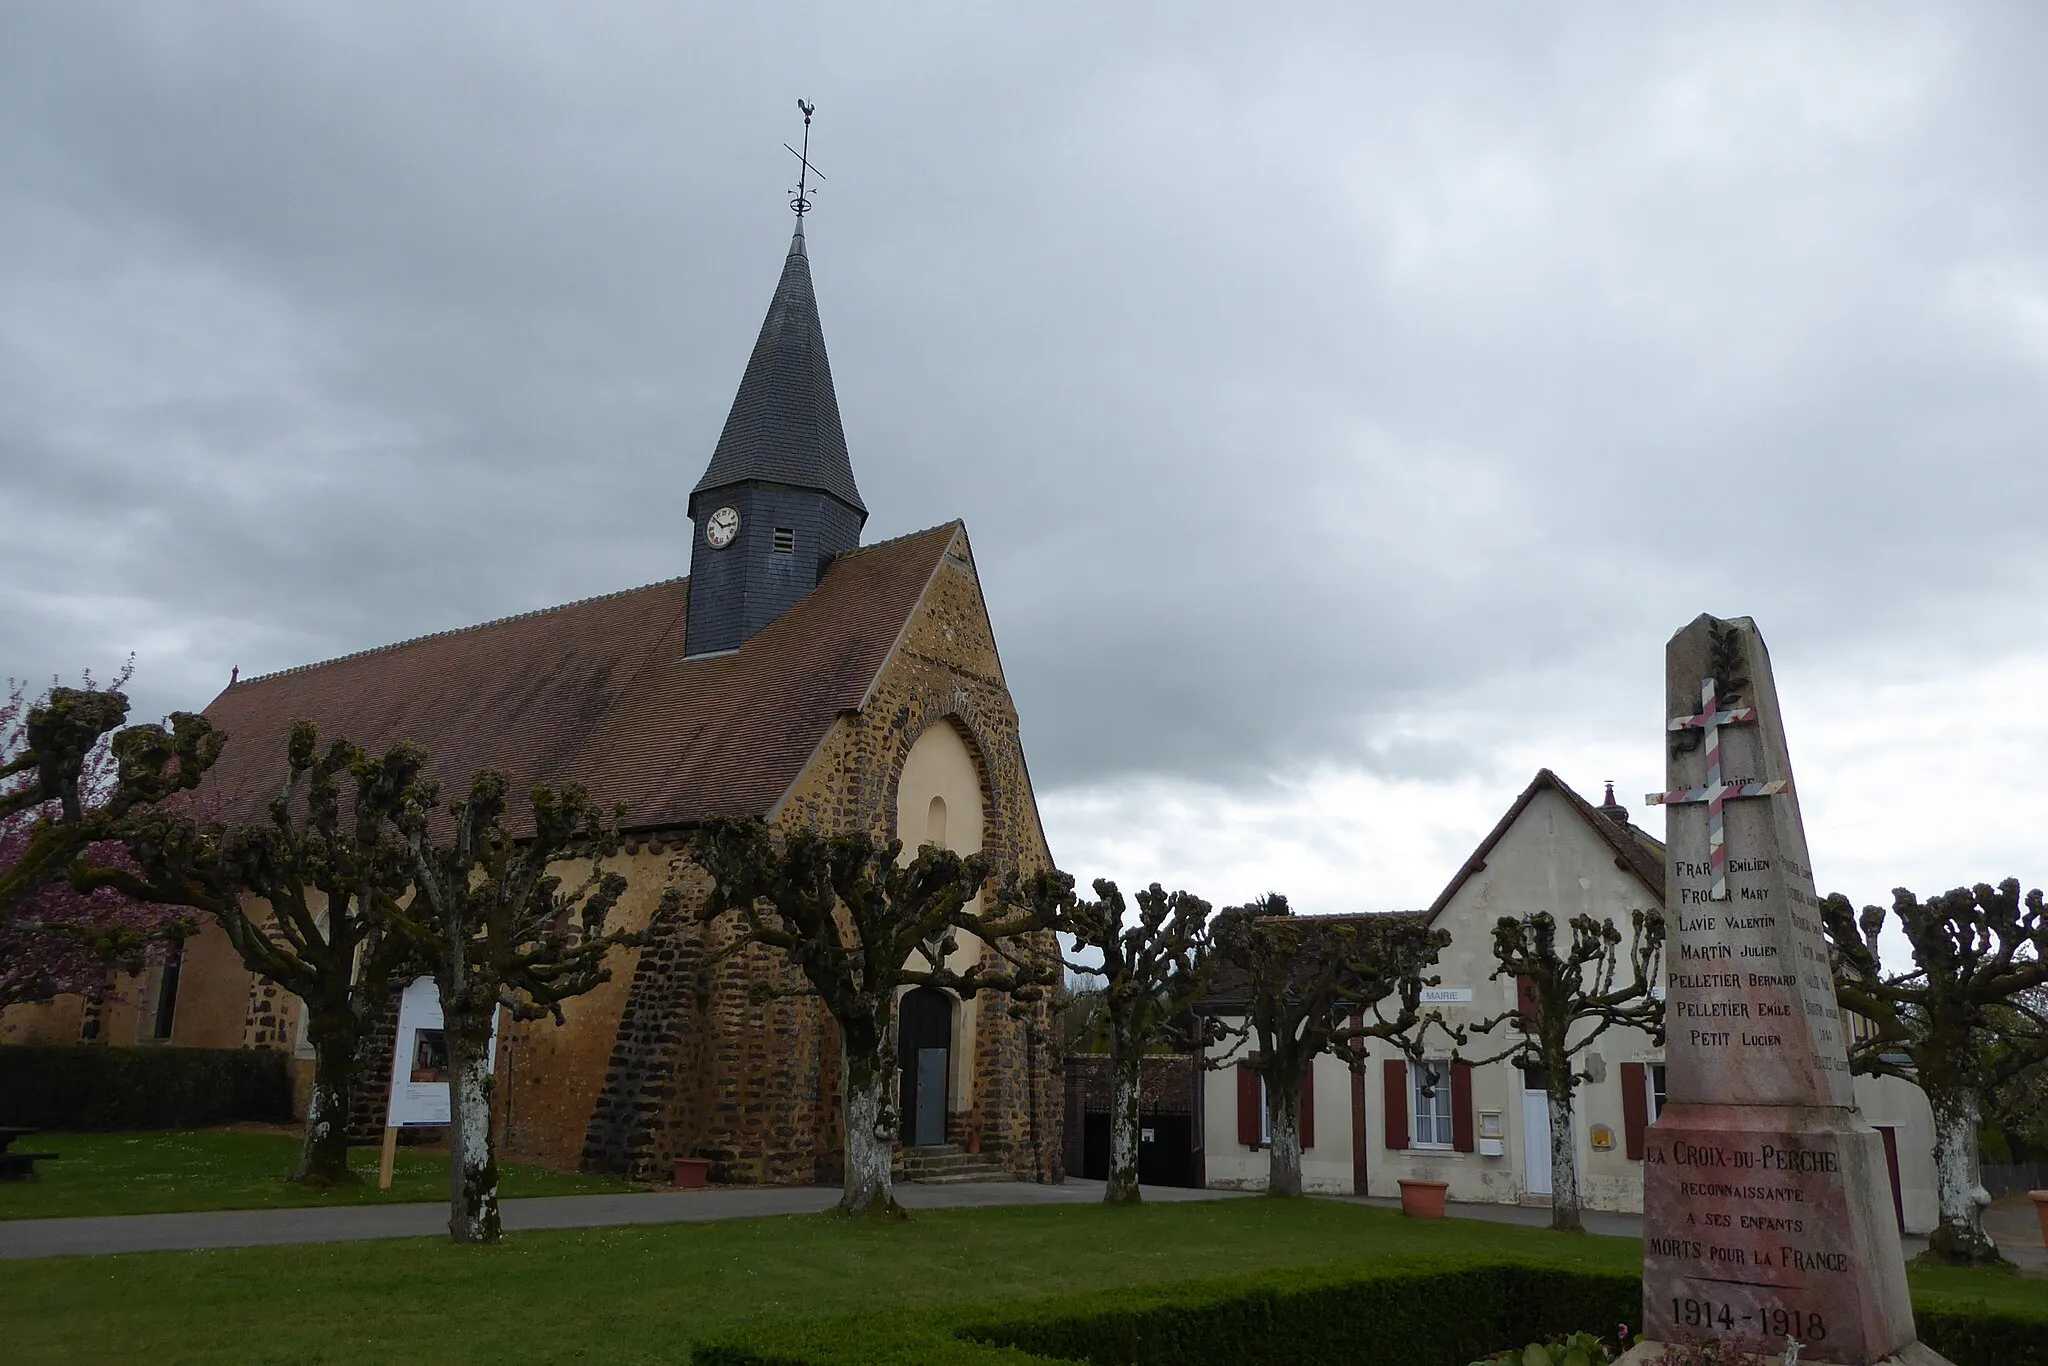 Photo showing: église Saint-Martin, monument aux morts et mairie, La Croix-du-Perche, Eure-et-Loir (France).